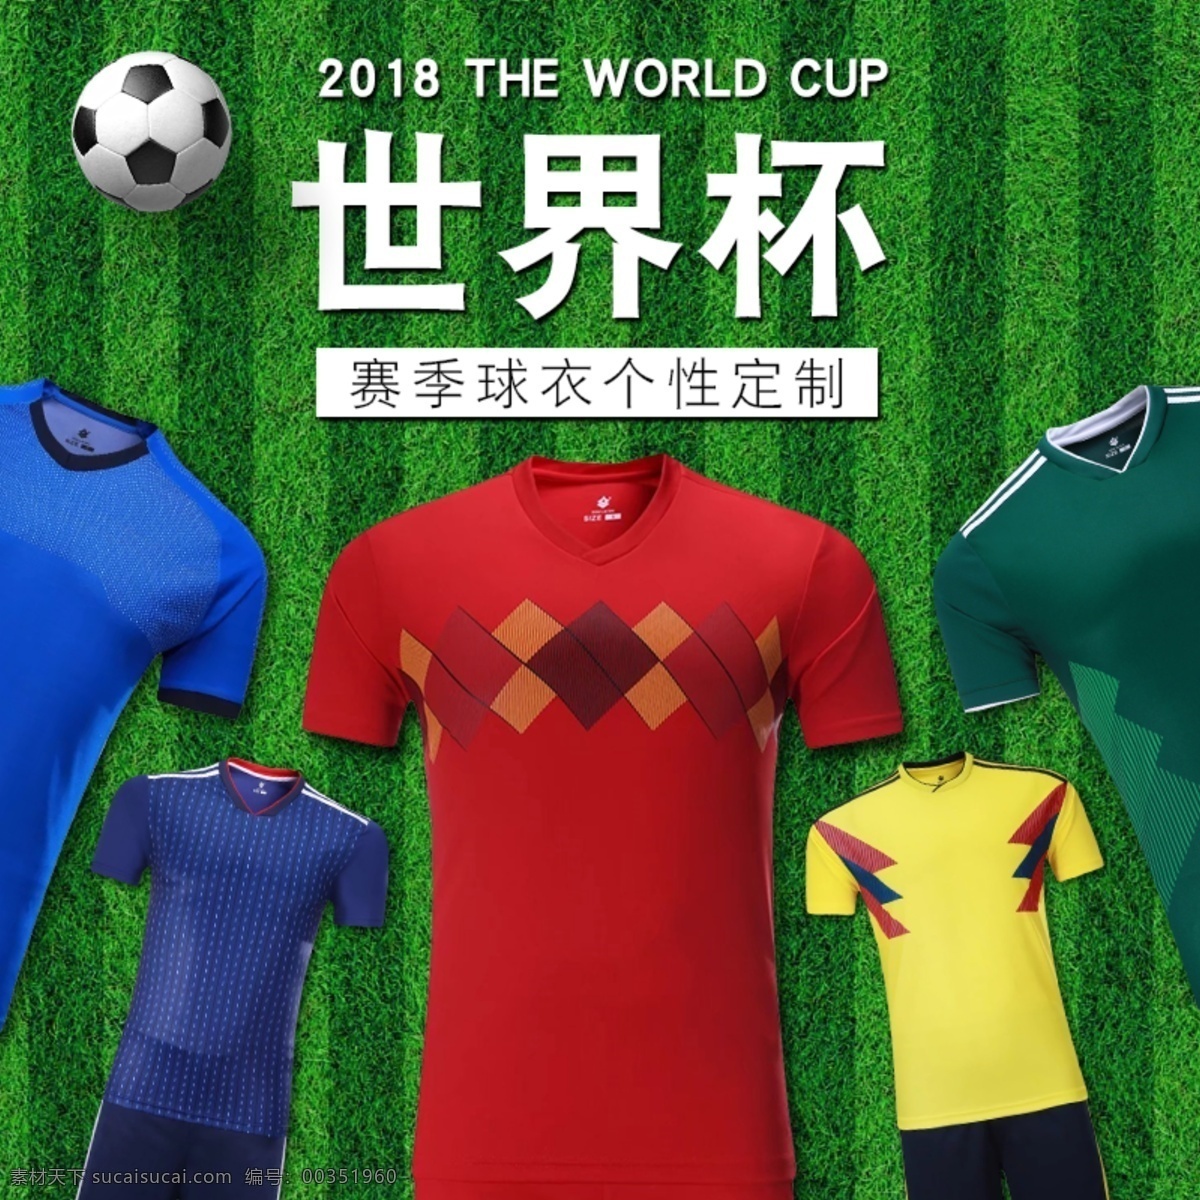 赛季 球衣 定制 淘宝 主 图 世界杯 直通车 主图 足球球衣 2018